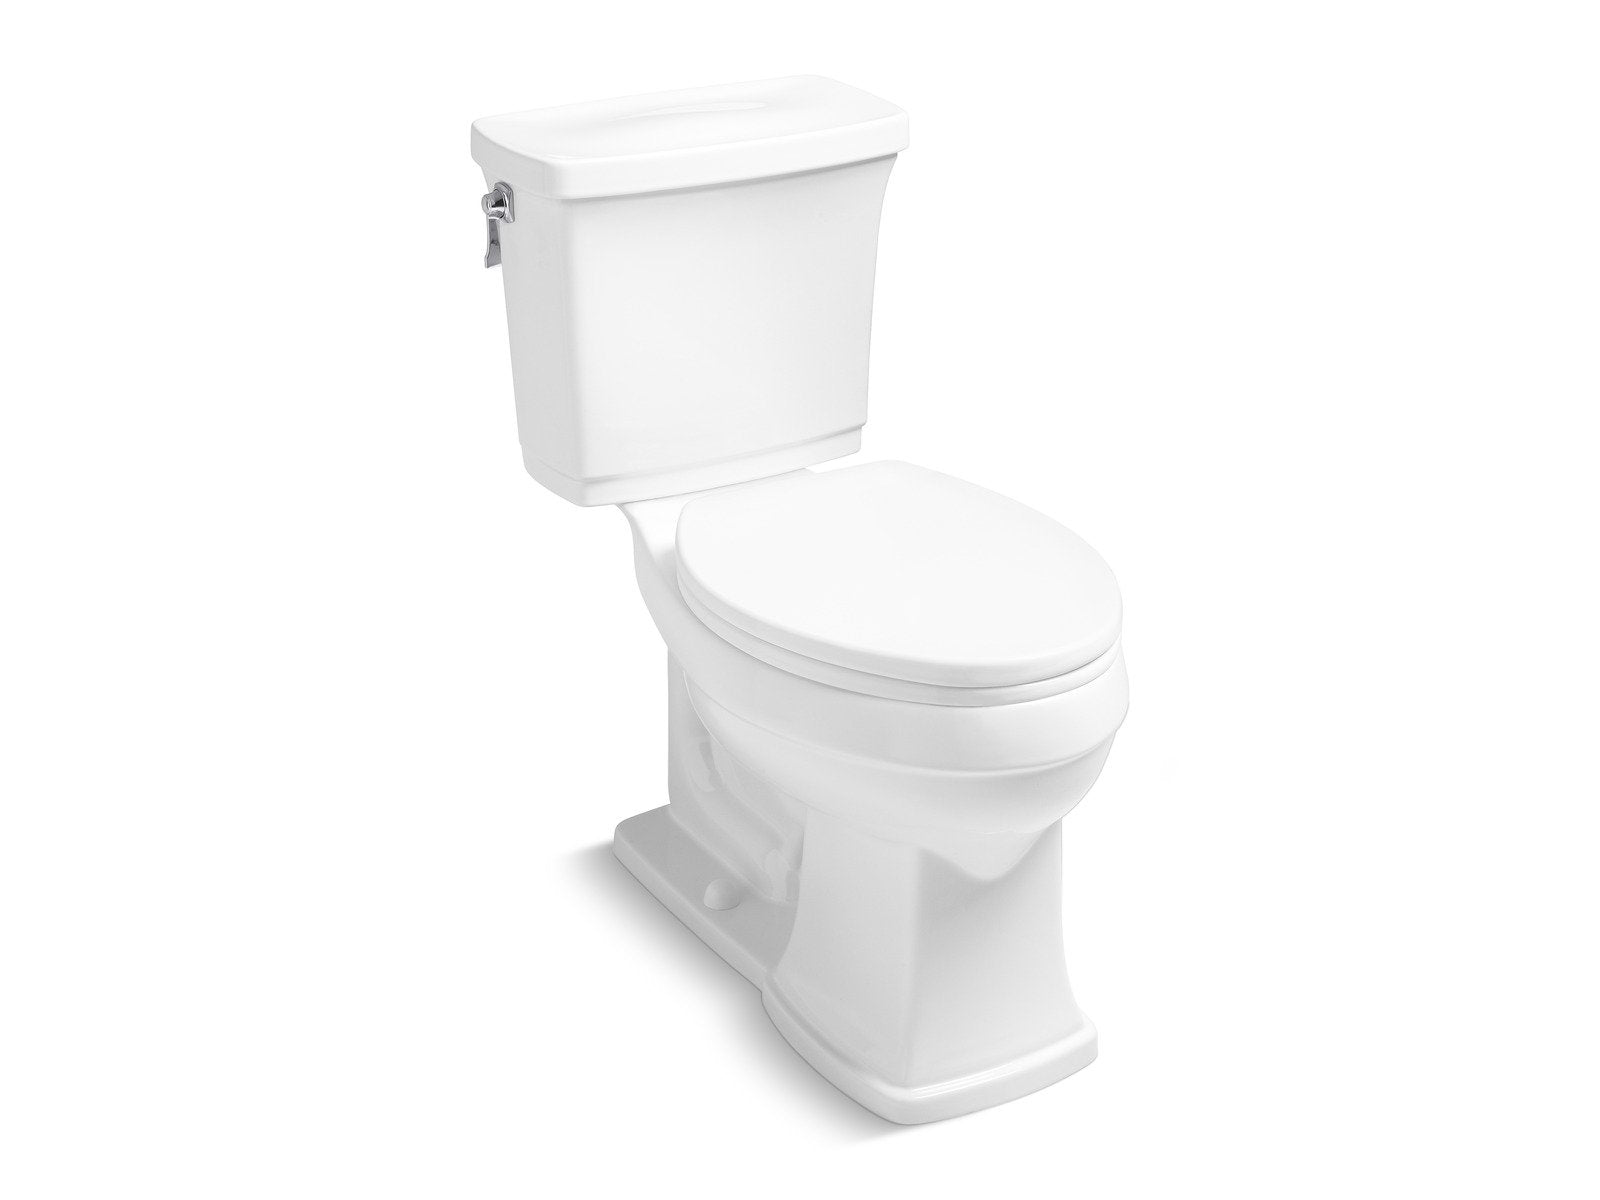 KALLISTA P70300-00-0 Bridgeton Two-Piece High-Efficiency Toilet, Less Seat in Stucco White